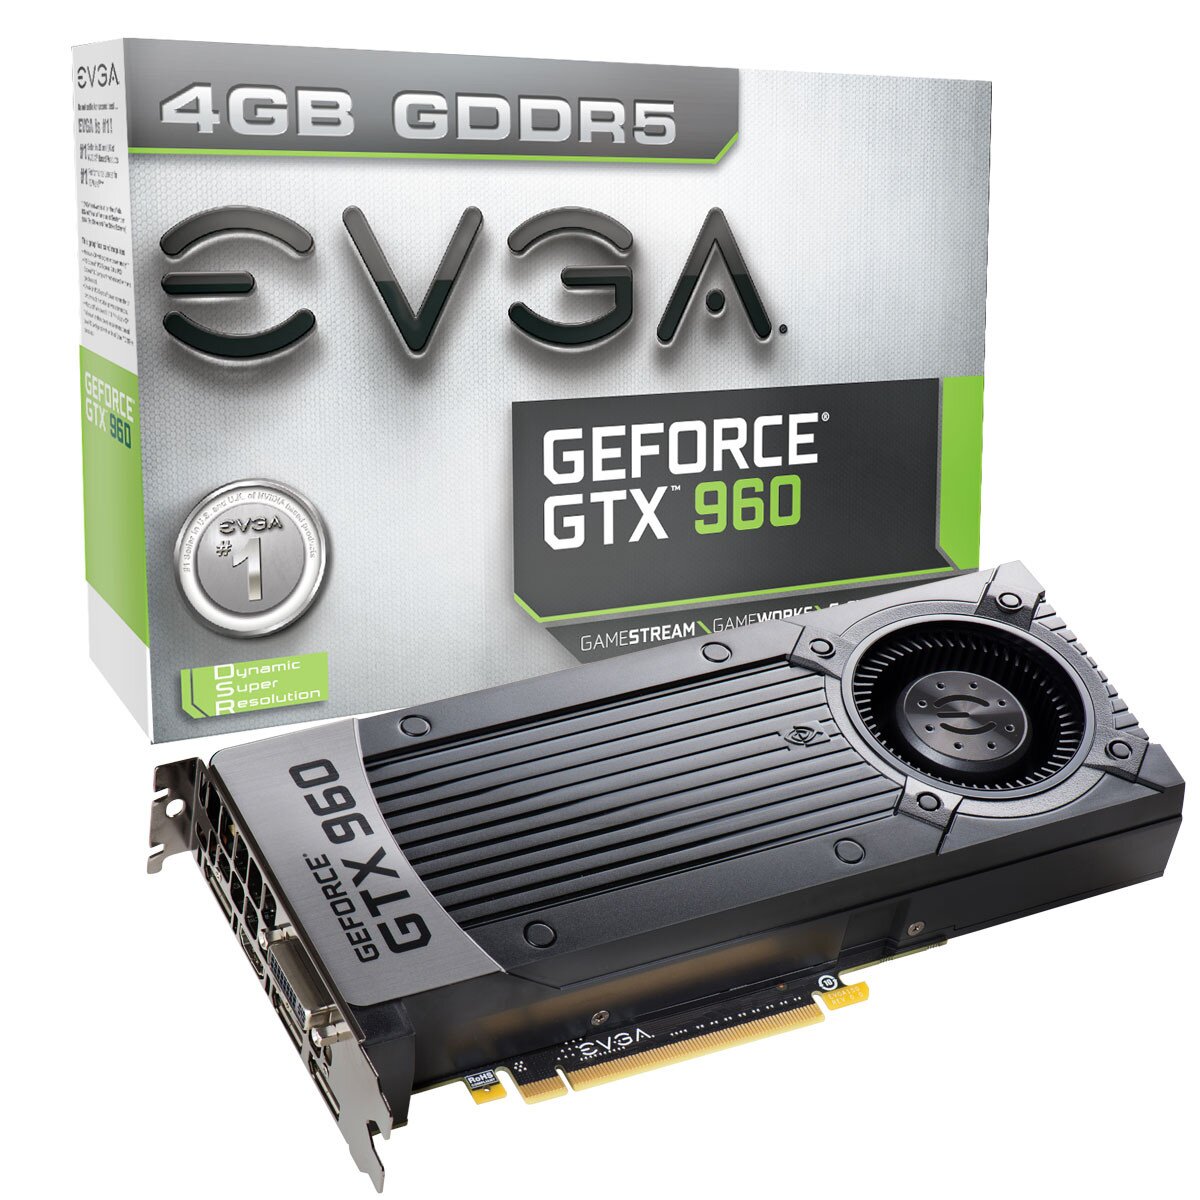 Evga Geforce Gtx 960 4gb Gaming